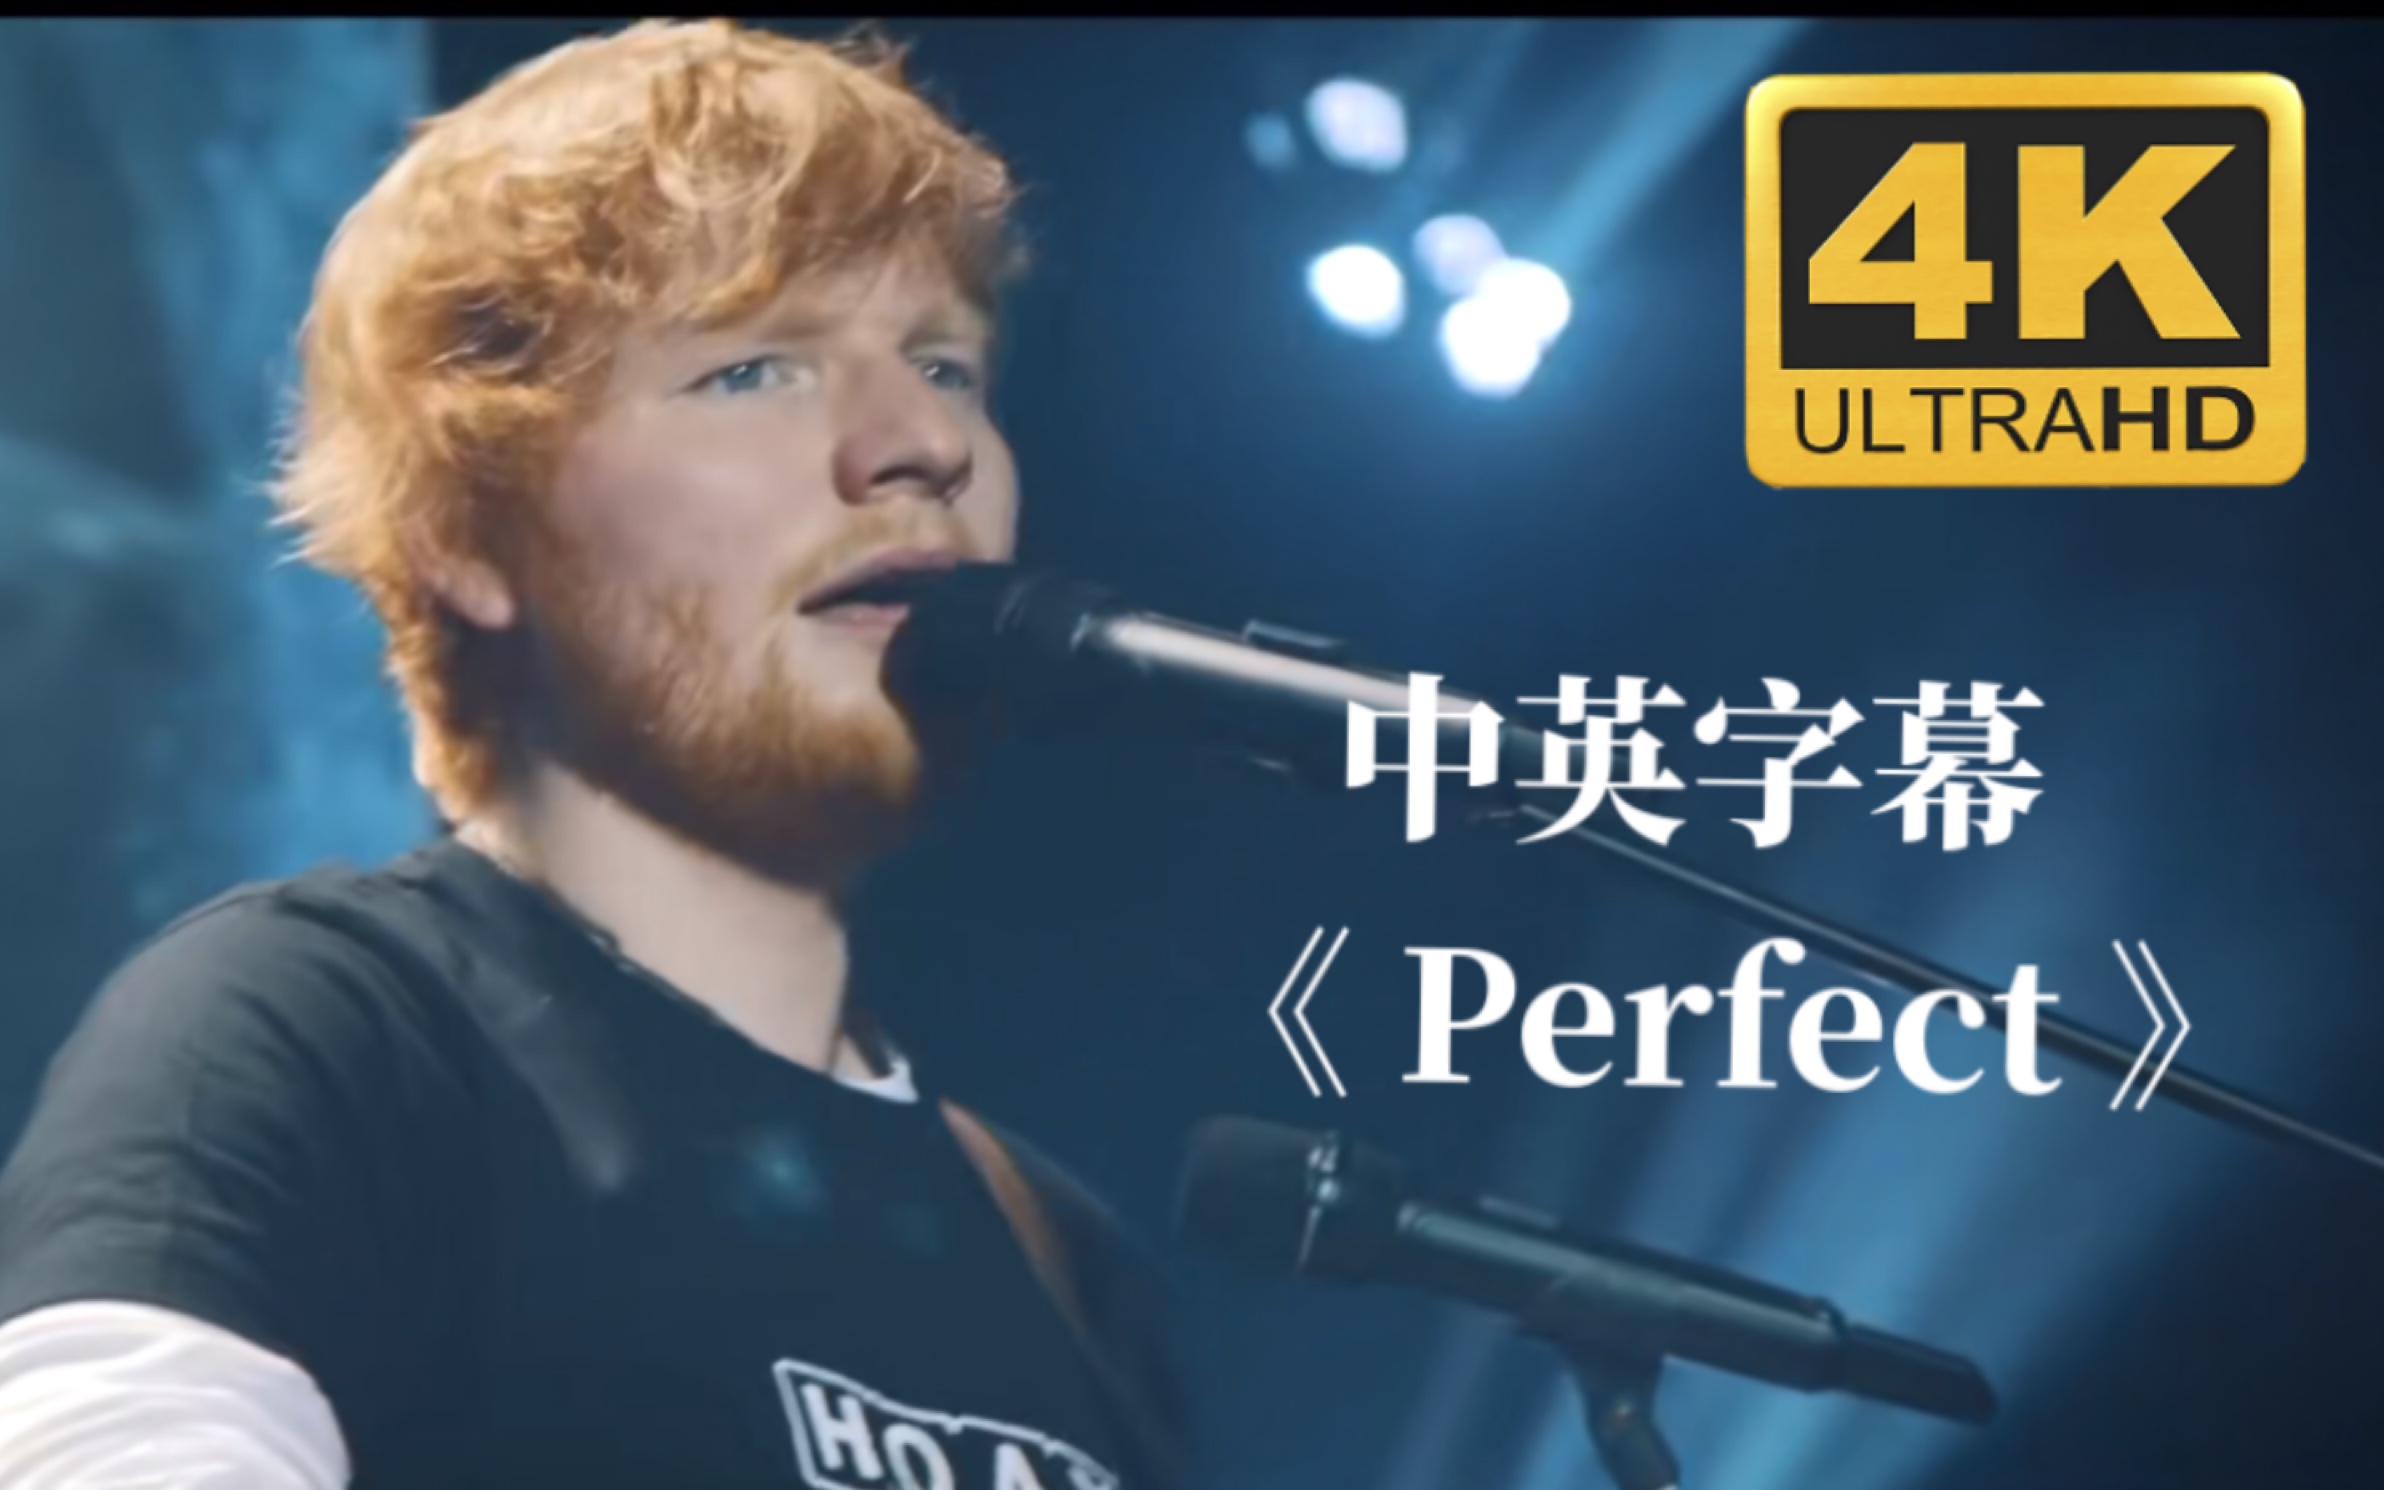 【中英字幕】永远的经典，婚礼必备歌曲《Perfect》—Ed Sheeran